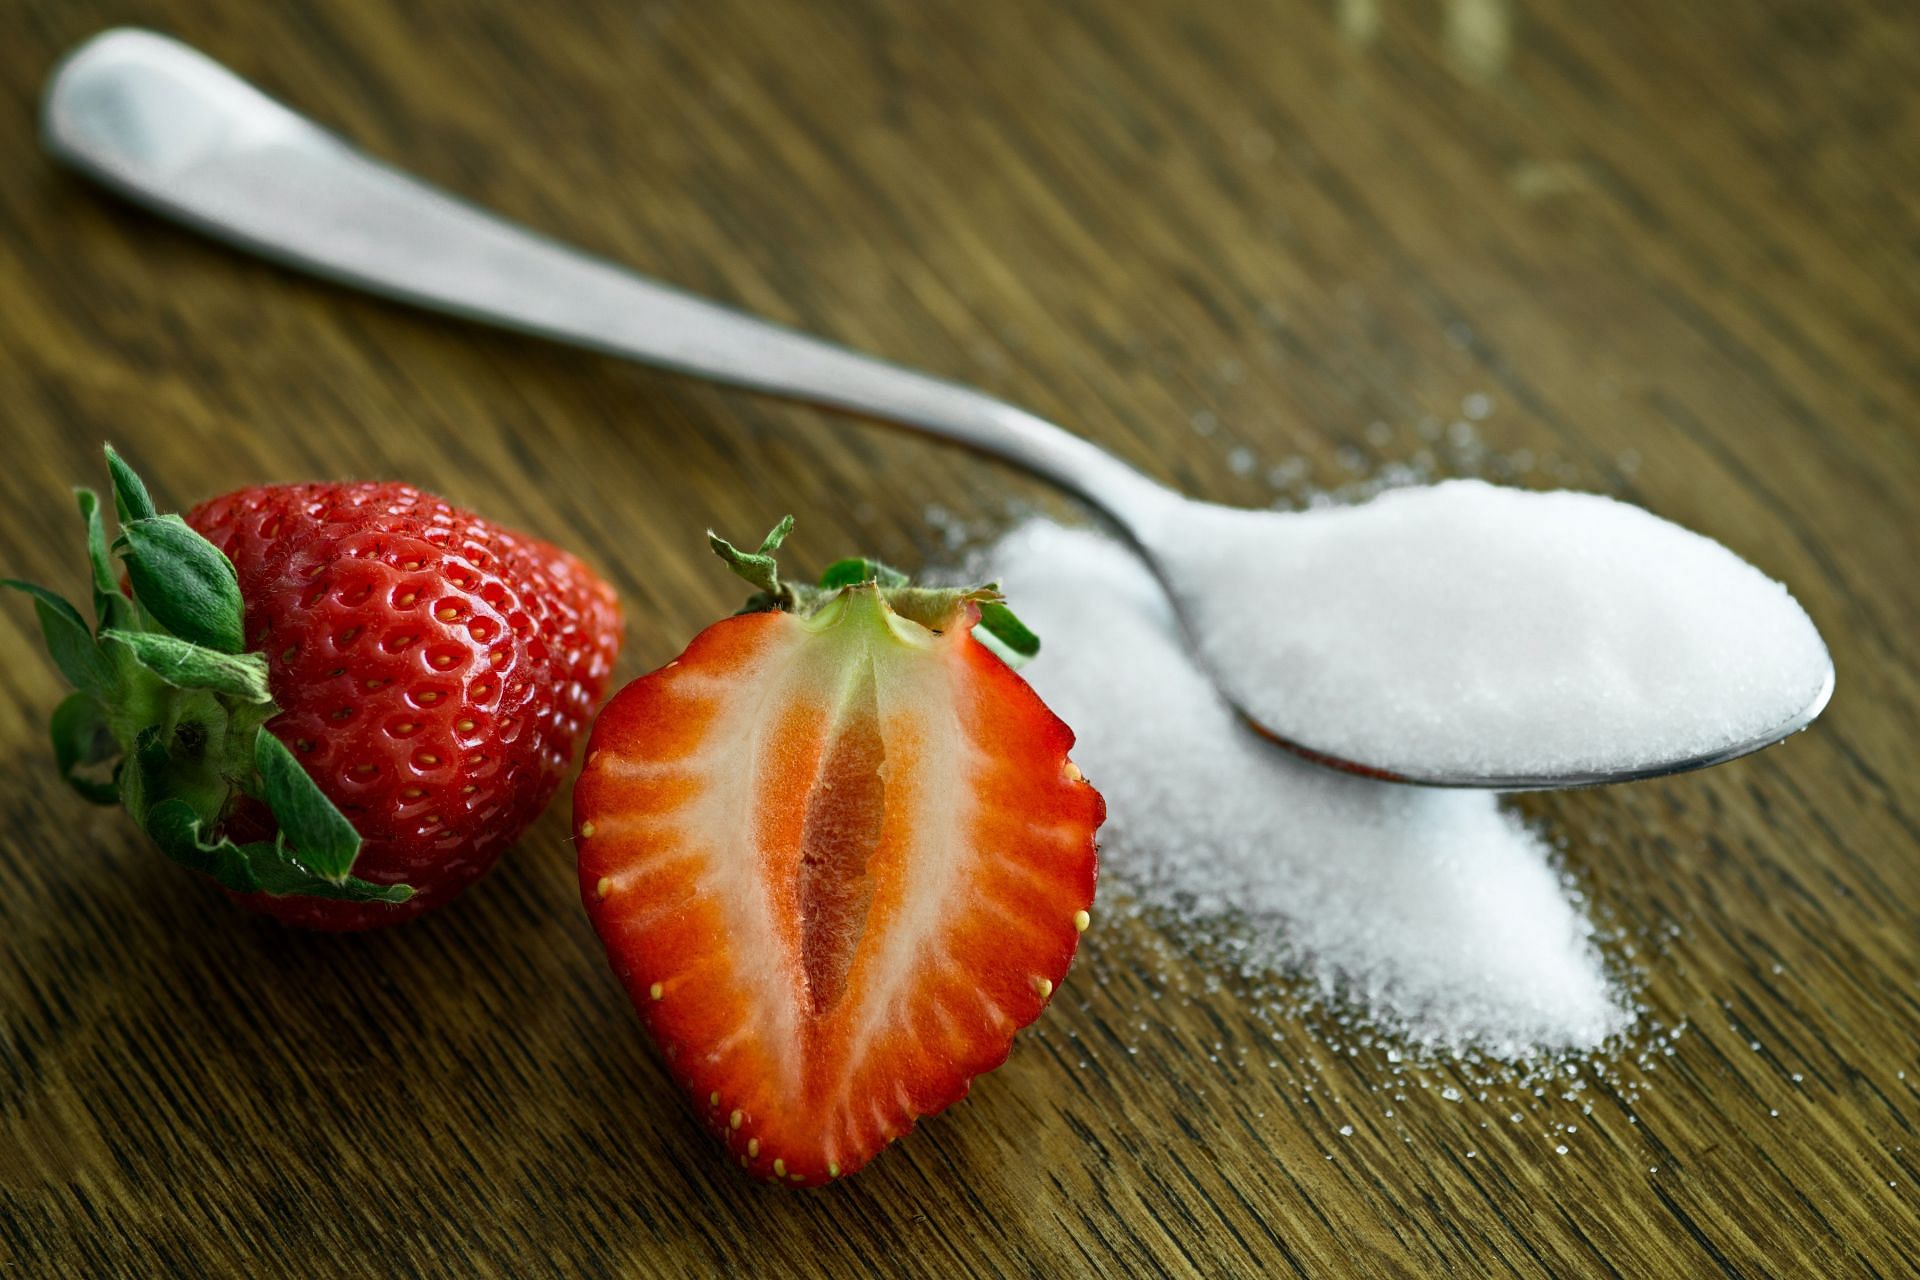 Avoid eating excess sugar. (Image via Pexels/Mali Maeder)